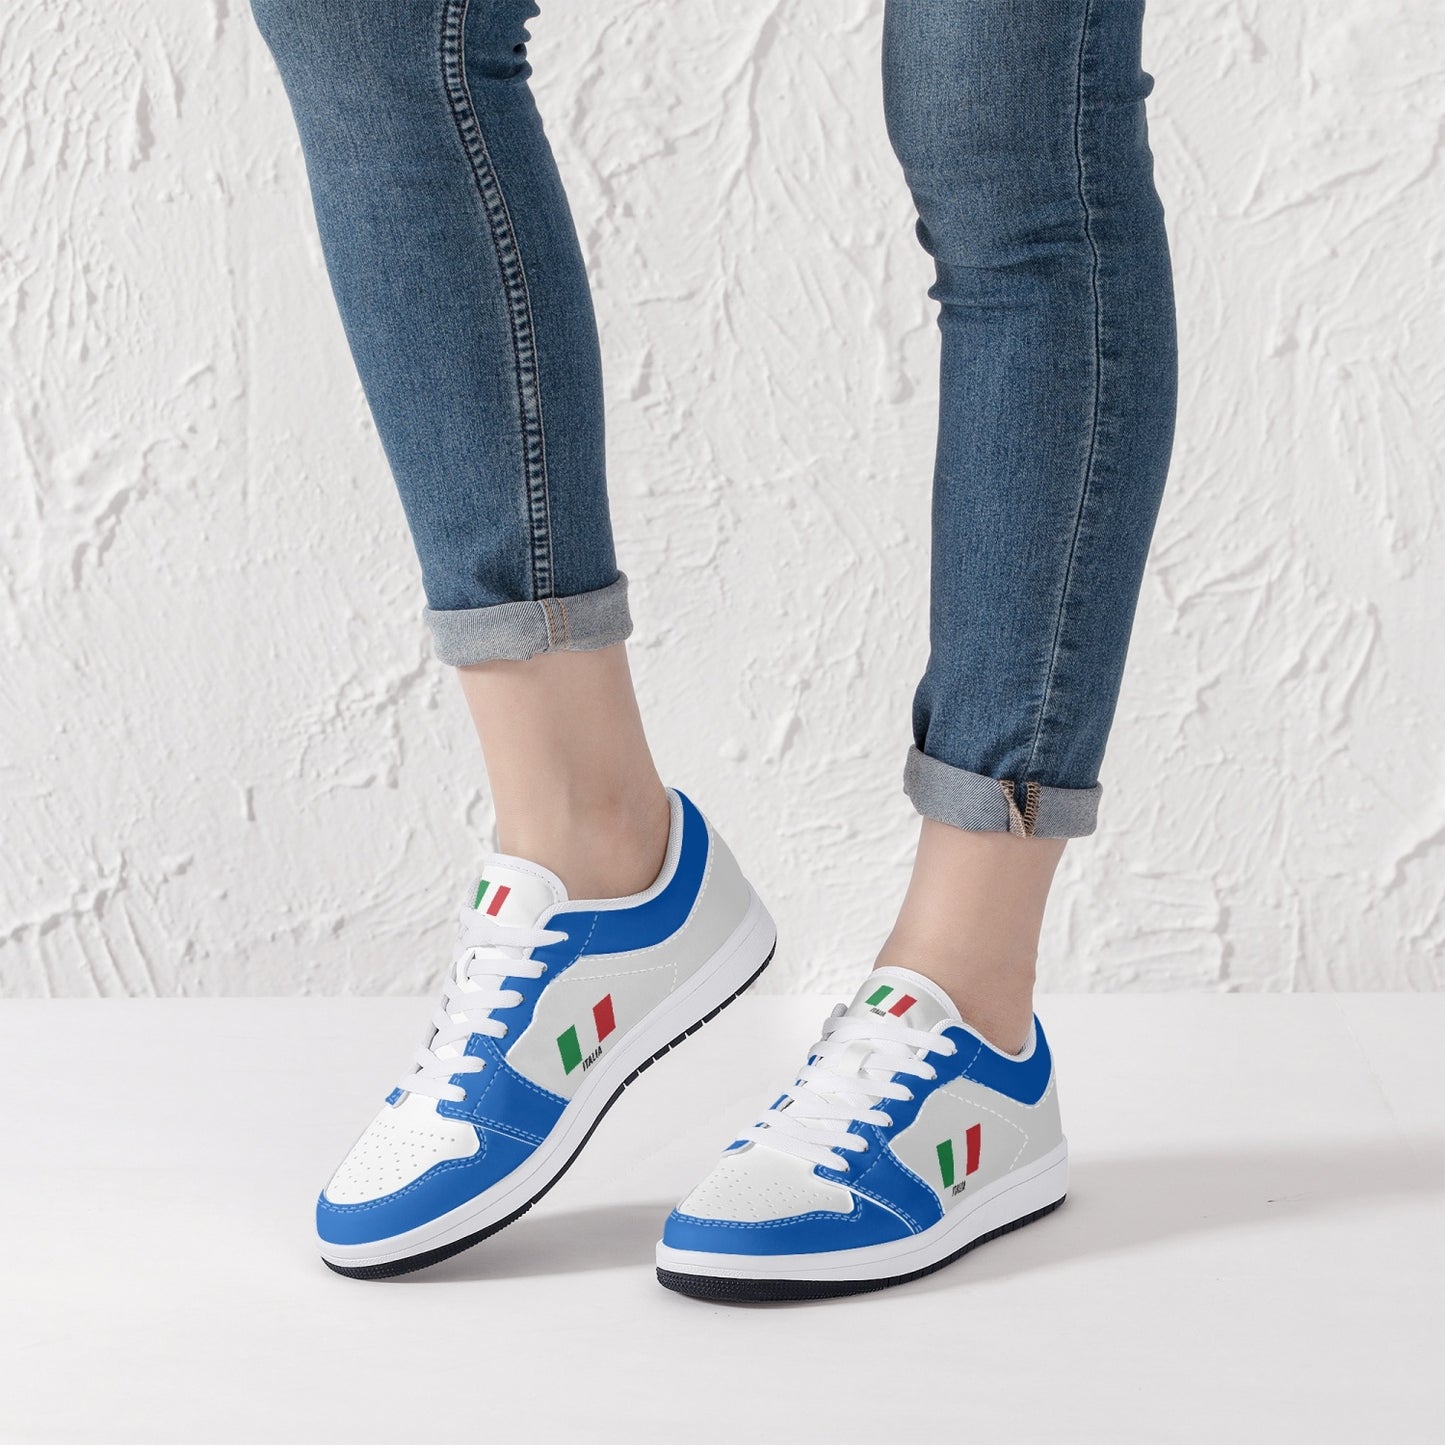 Scarpe Sneakers Italia - Bianco/Azzurro - Taglie Uomo